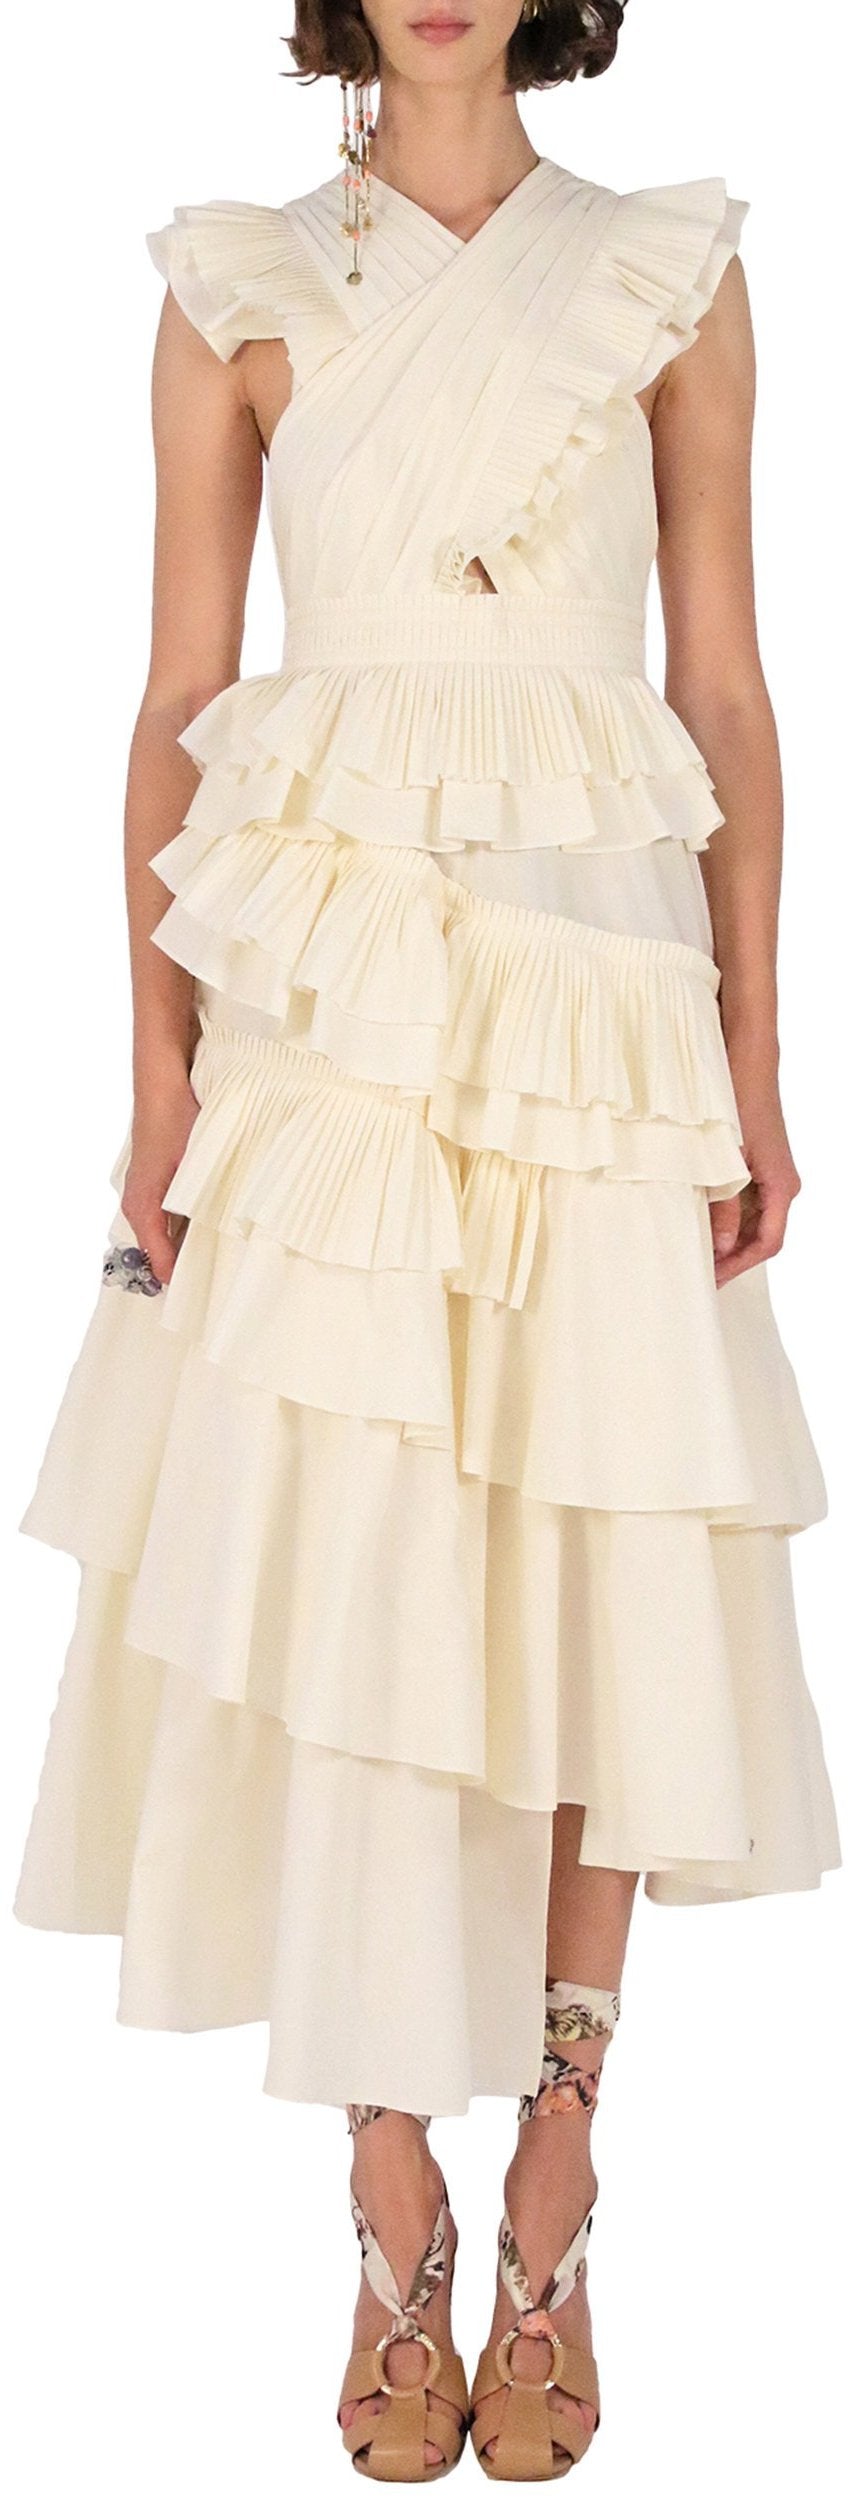 'Aurore' Tiered Cotton Dress, Cream Women's Designer Fashions